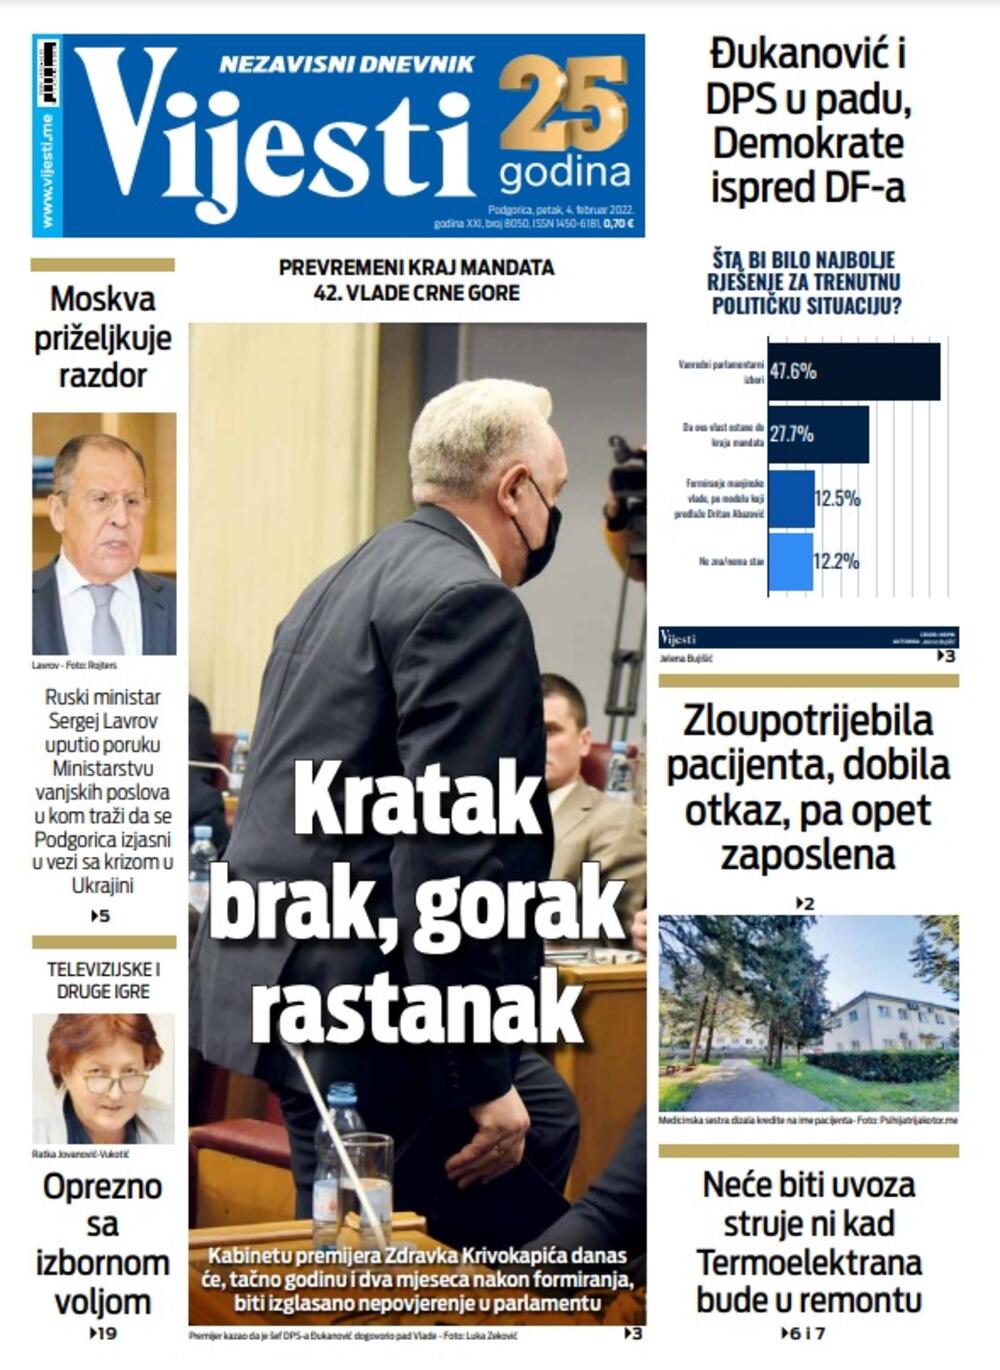 Naslovna strana "Vijesti" za 4. februar 2022. godine, Foto: Vijesti